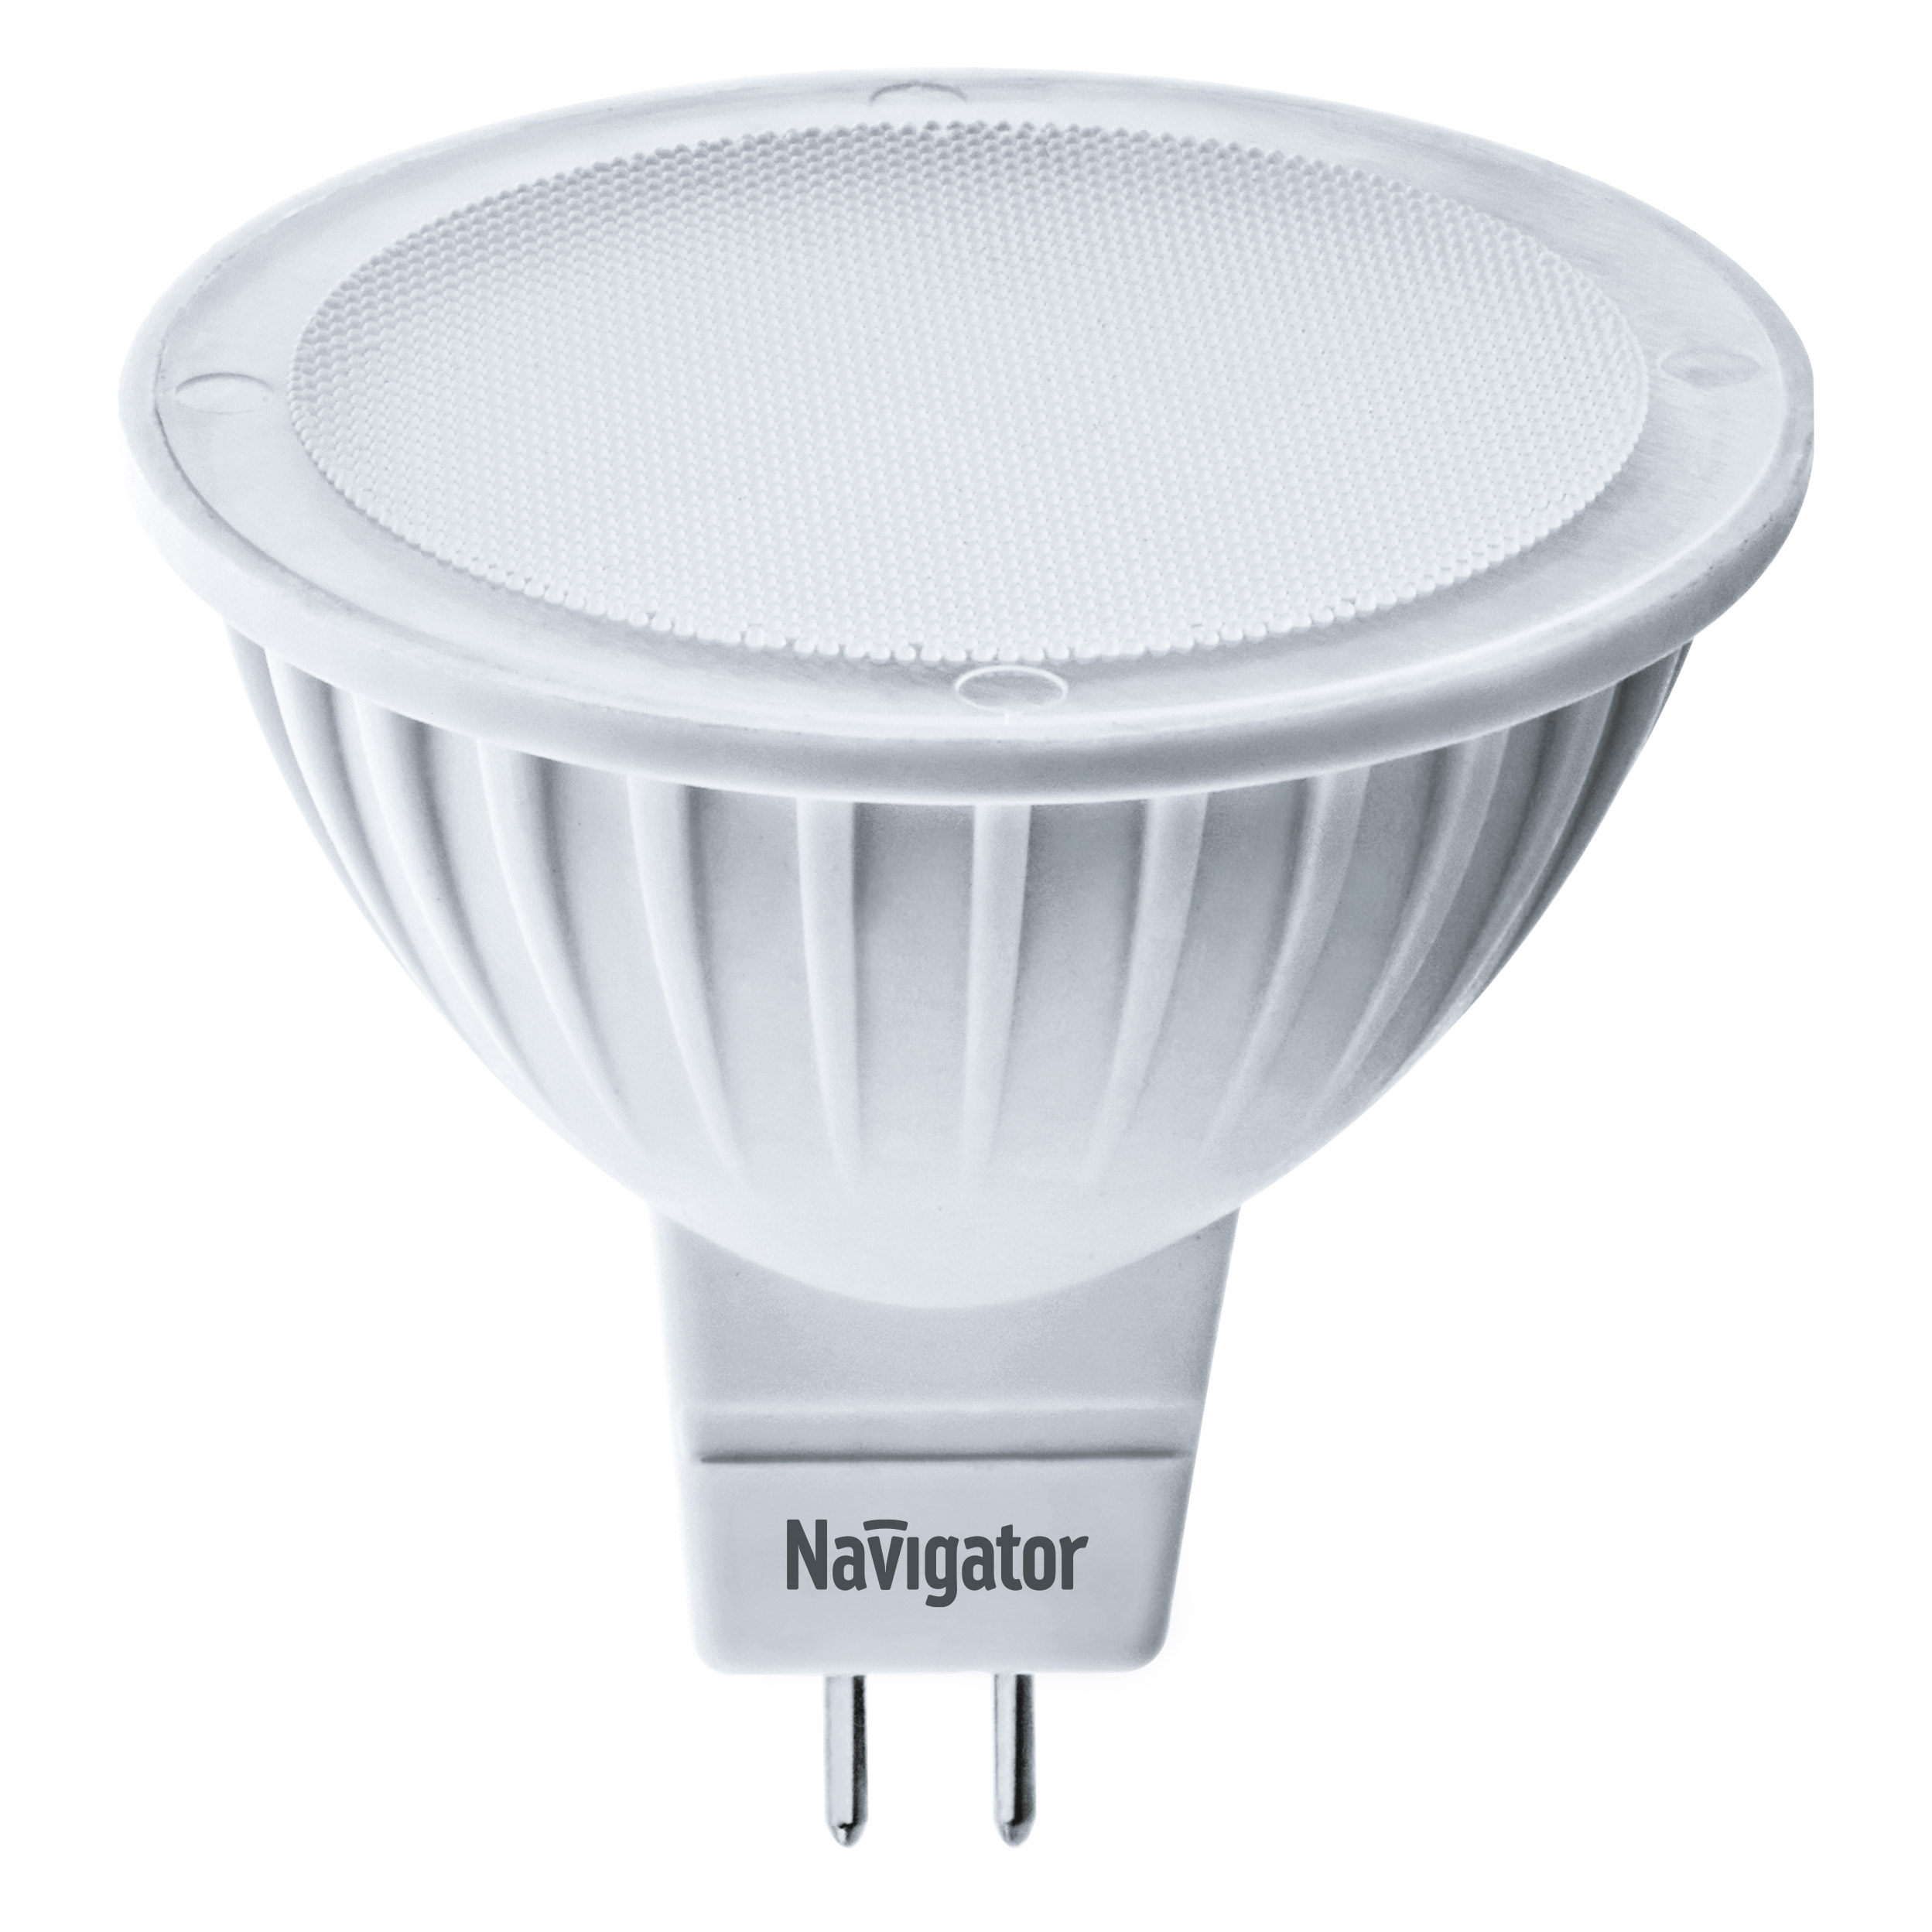 Лампа светодиодная Navigator MR16 3Вт 230В цоколь GU5.3 (теплый свет) трансформатор 94 432 nt eh 060 en ip44 для низковольтных галогенных ламп navigator 94432